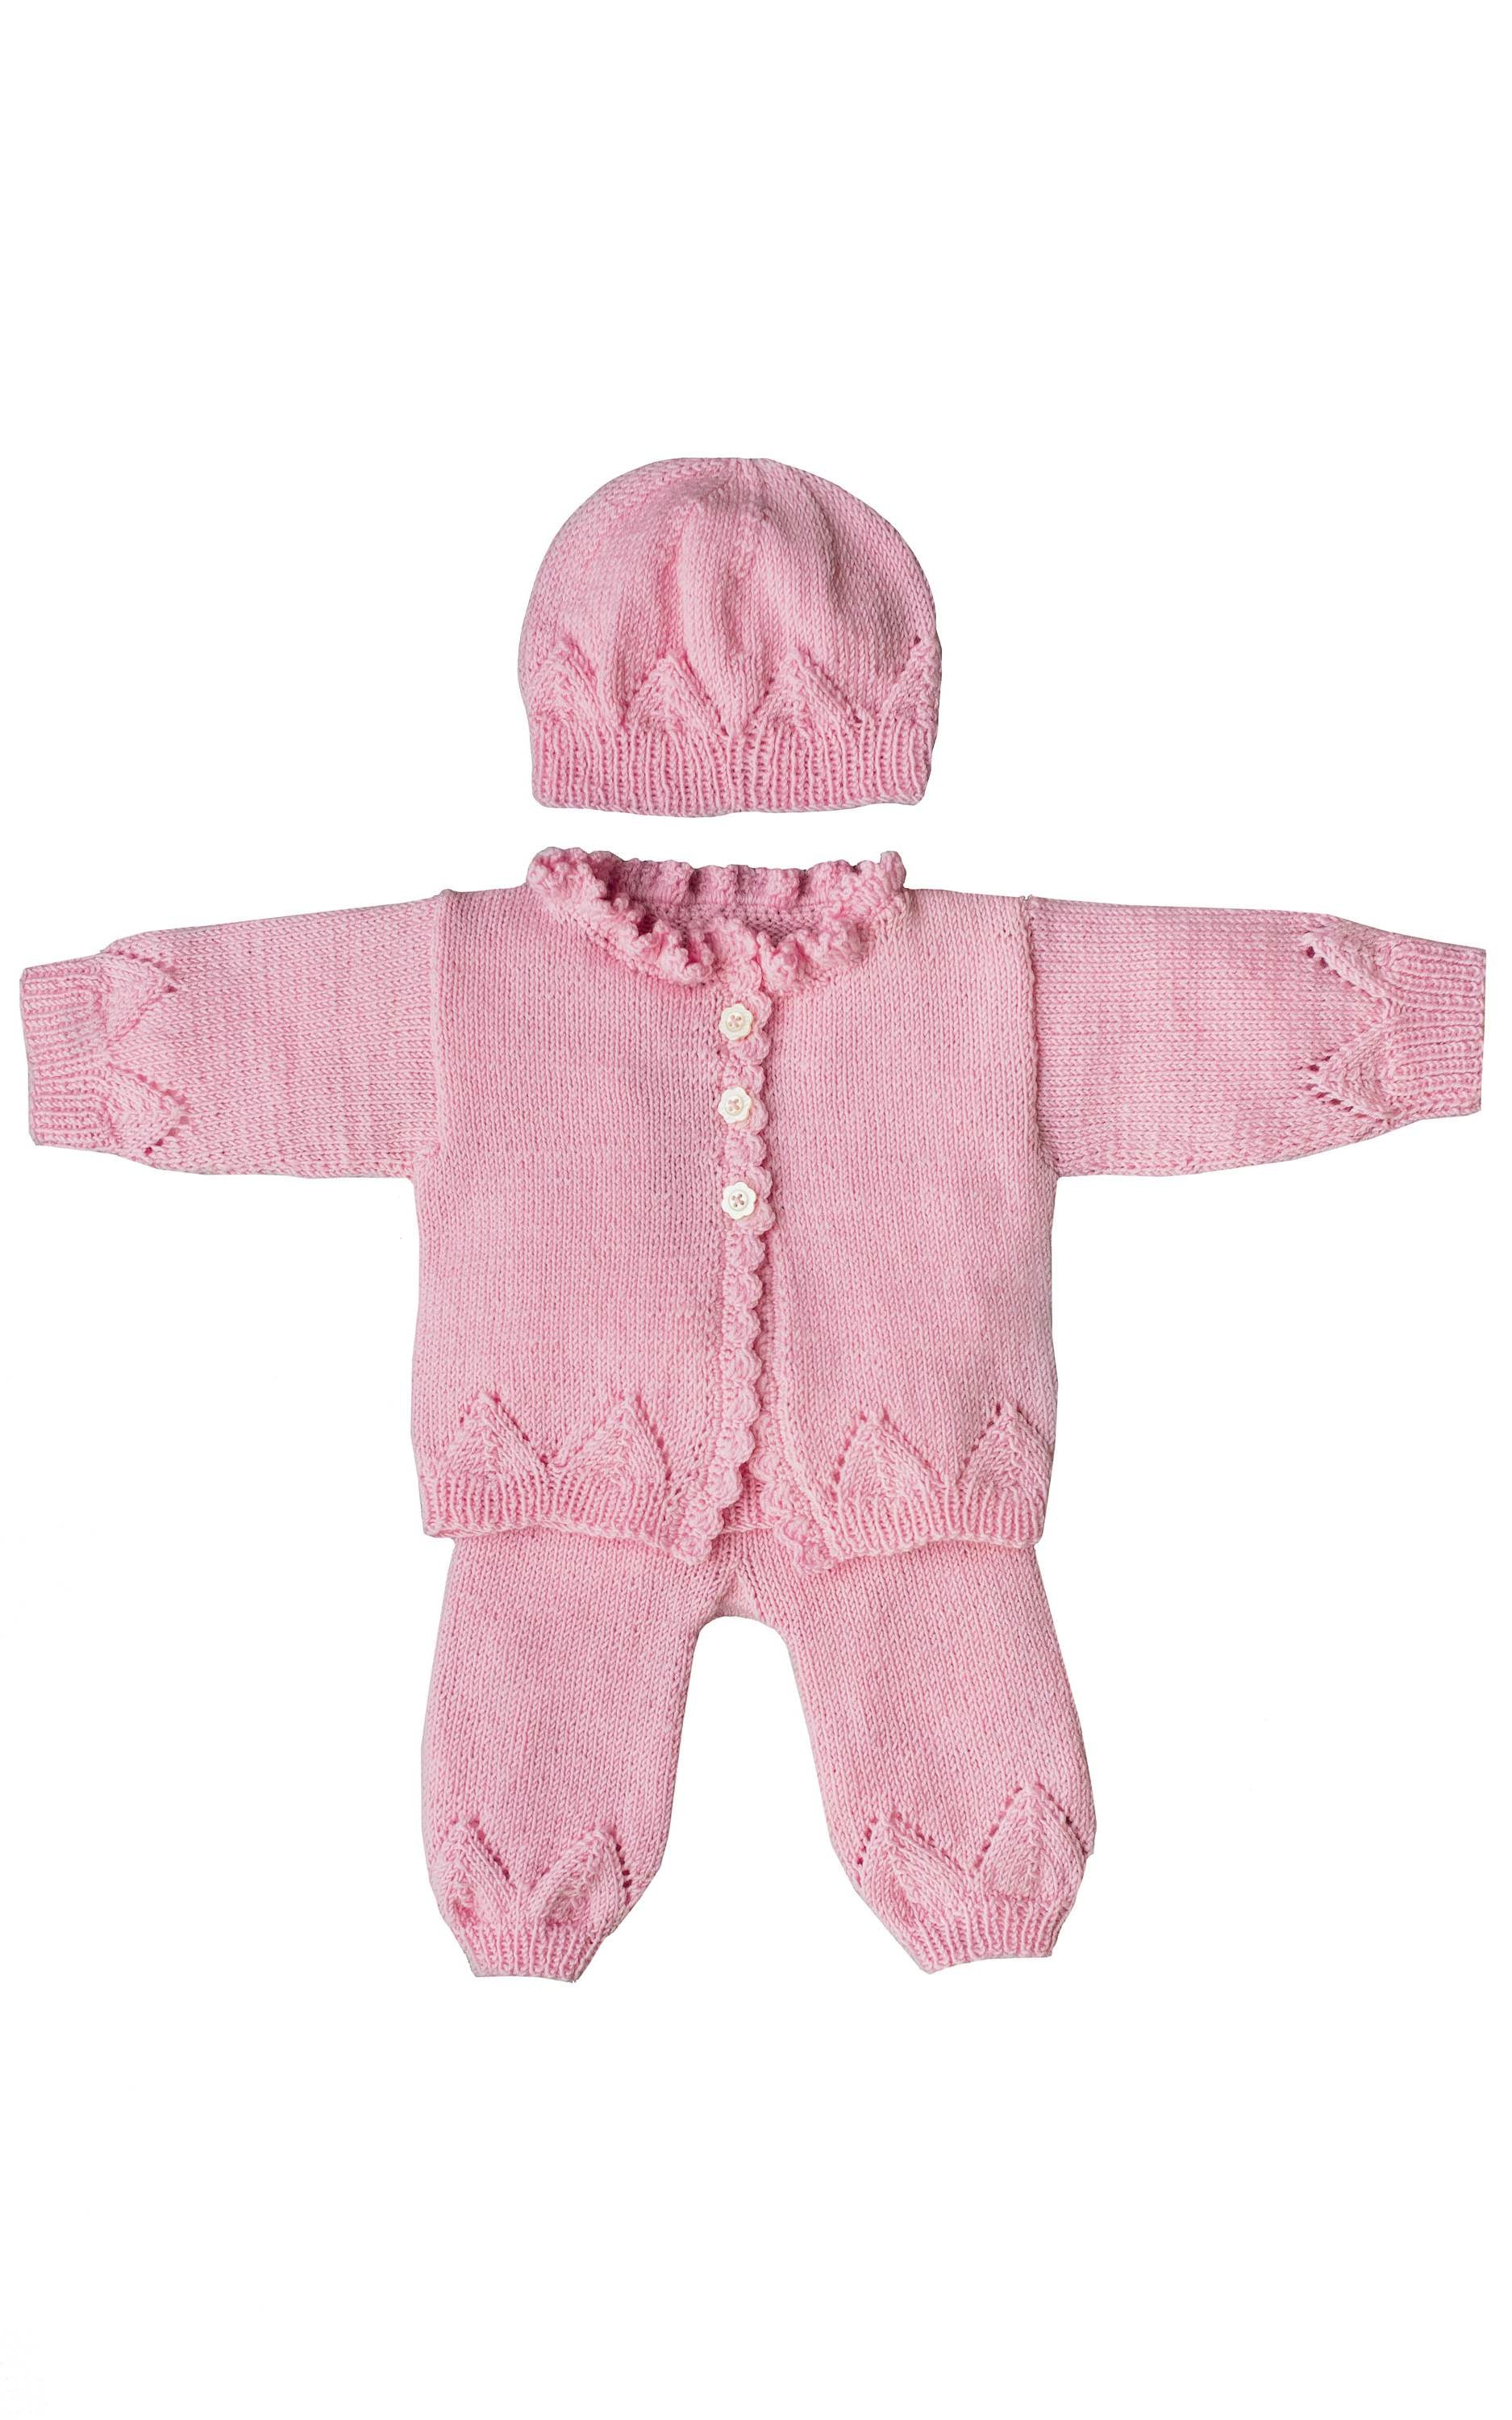 Baby Hose mit Ajourmuster - Strickset von LANA GROSSA jetzt online kaufen bei OONIQUE